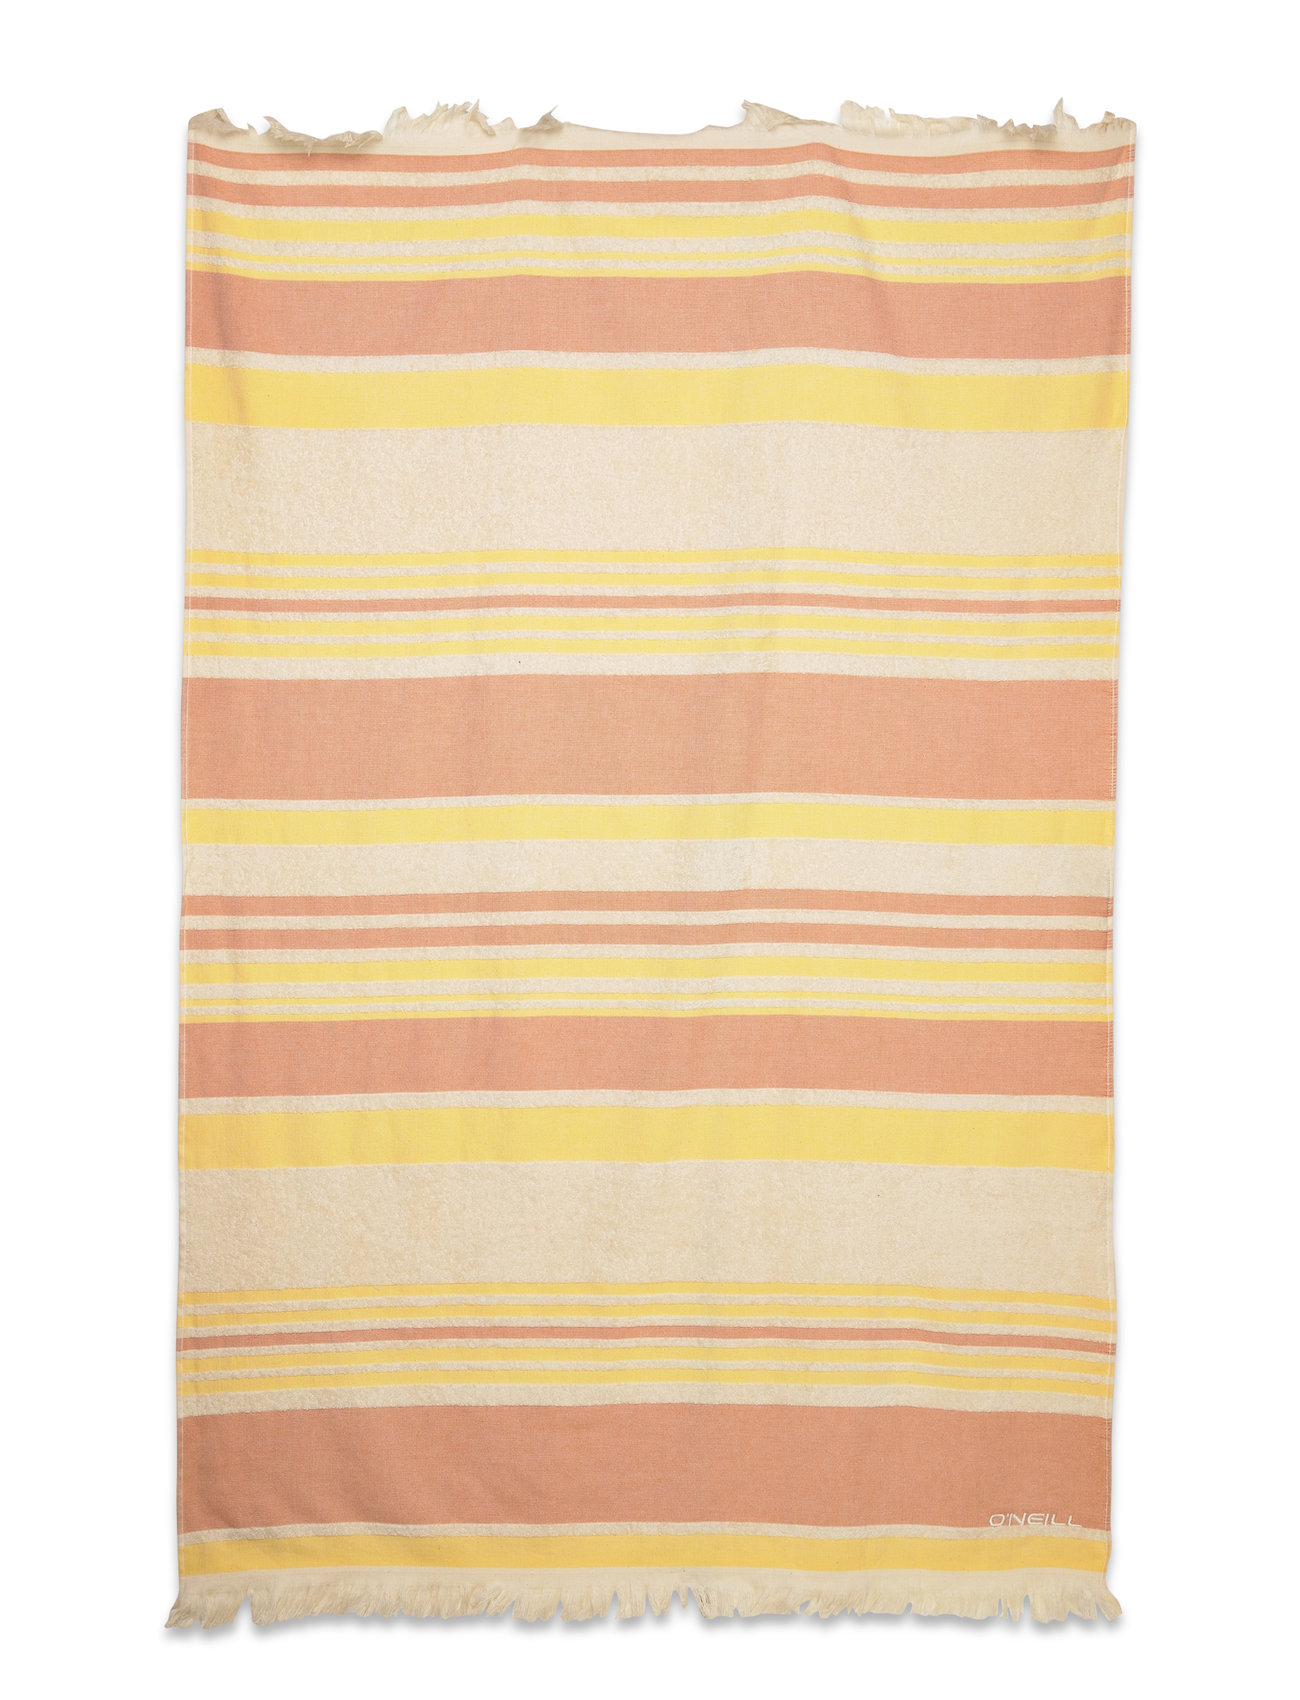 Mix& Match Shoreline Towel Home Textiles Bathroom Textiles Towels & Bath Towels Beach Towels Beige O'neill